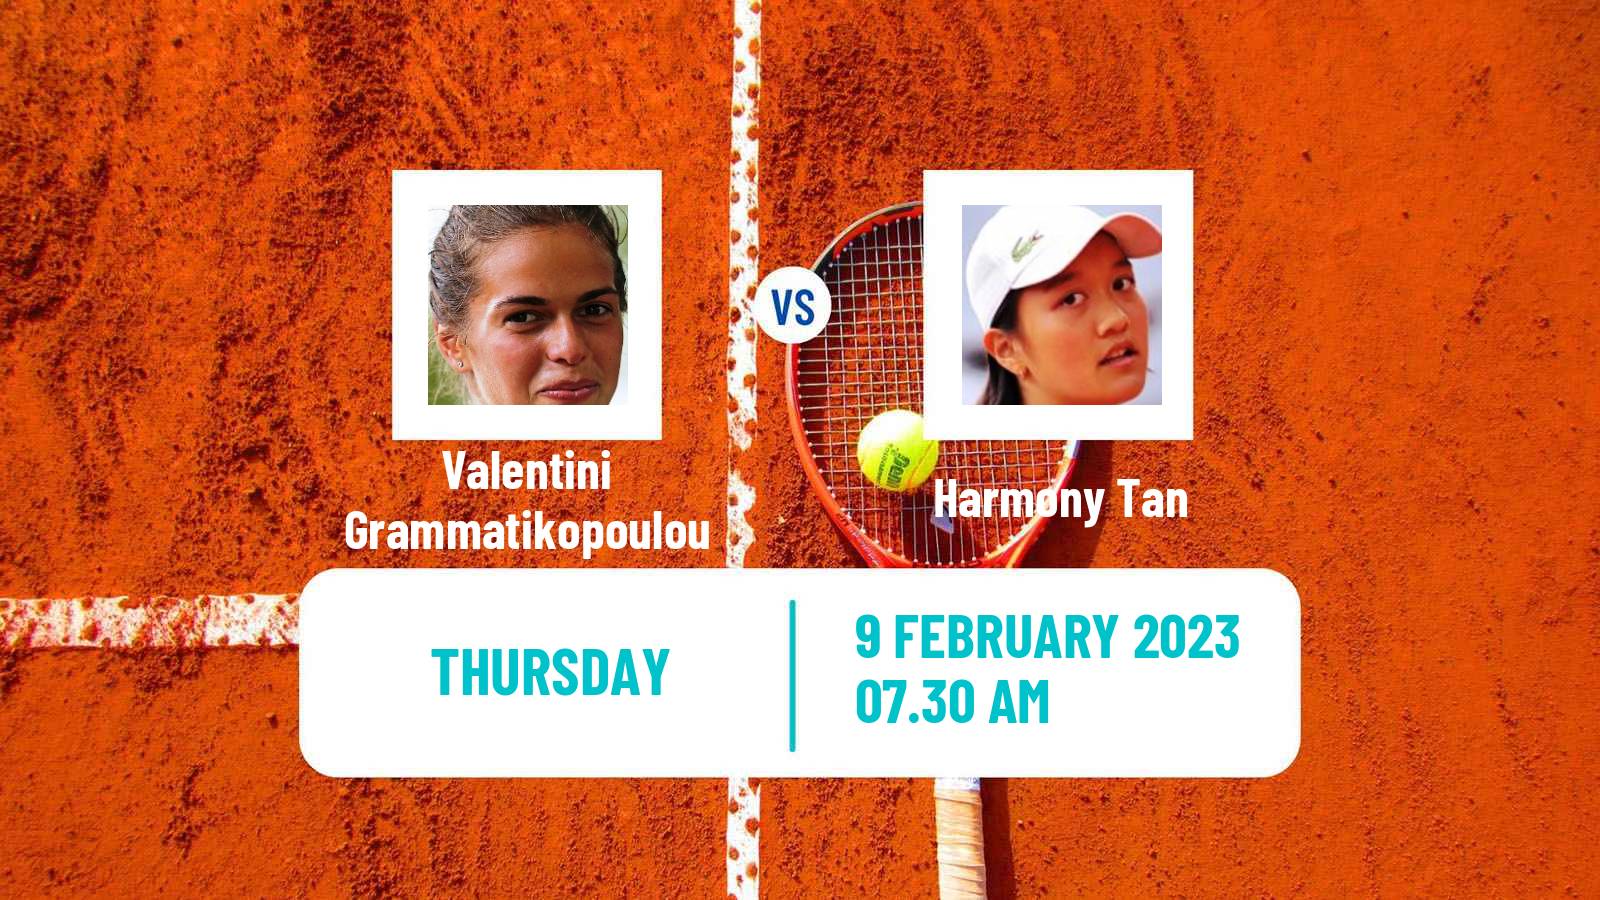 Tennis ITF Tournaments Valentini Grammatikopoulou - Harmony Tan